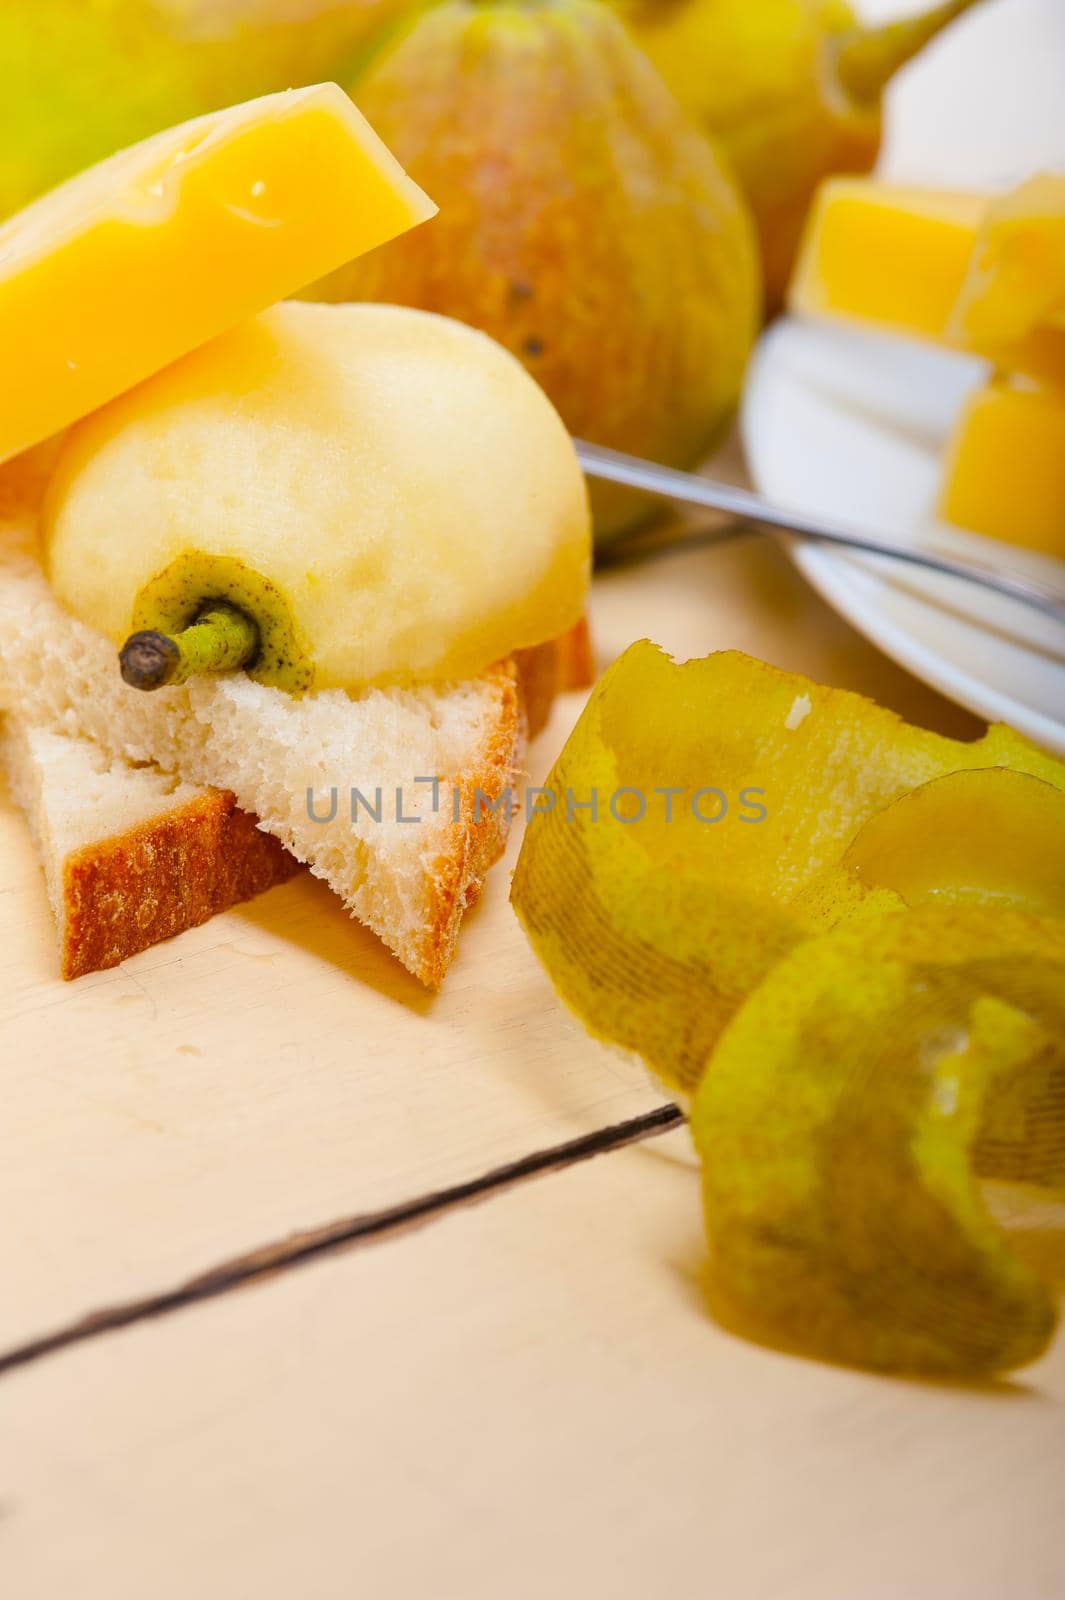 fresh pears and cheese by keko64